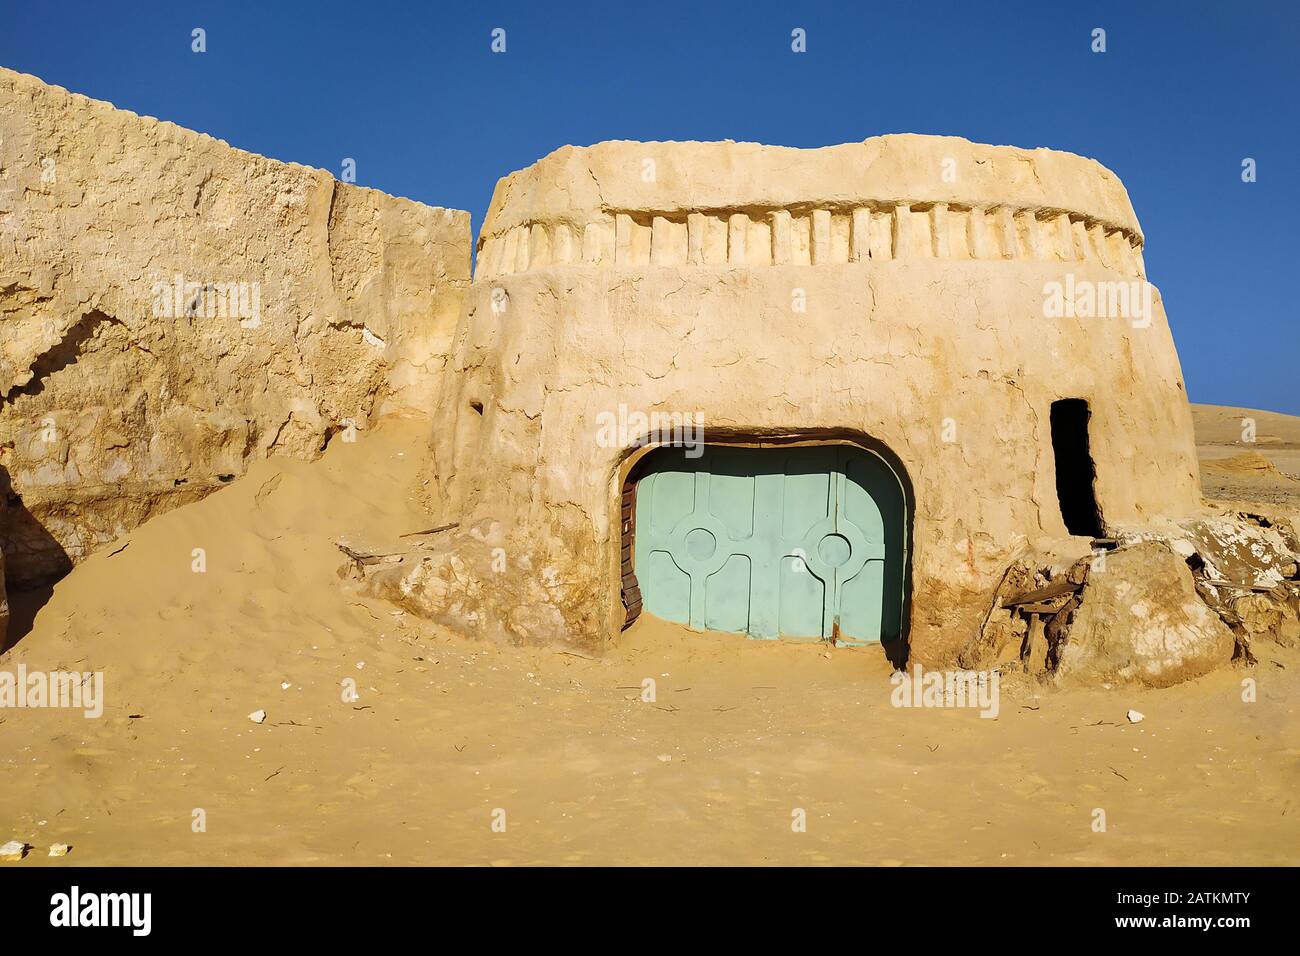 Nefta, Tunesia - 29. Juni 2019. Star Wars Tatooine Dörfer in Tunesien Stockfoto